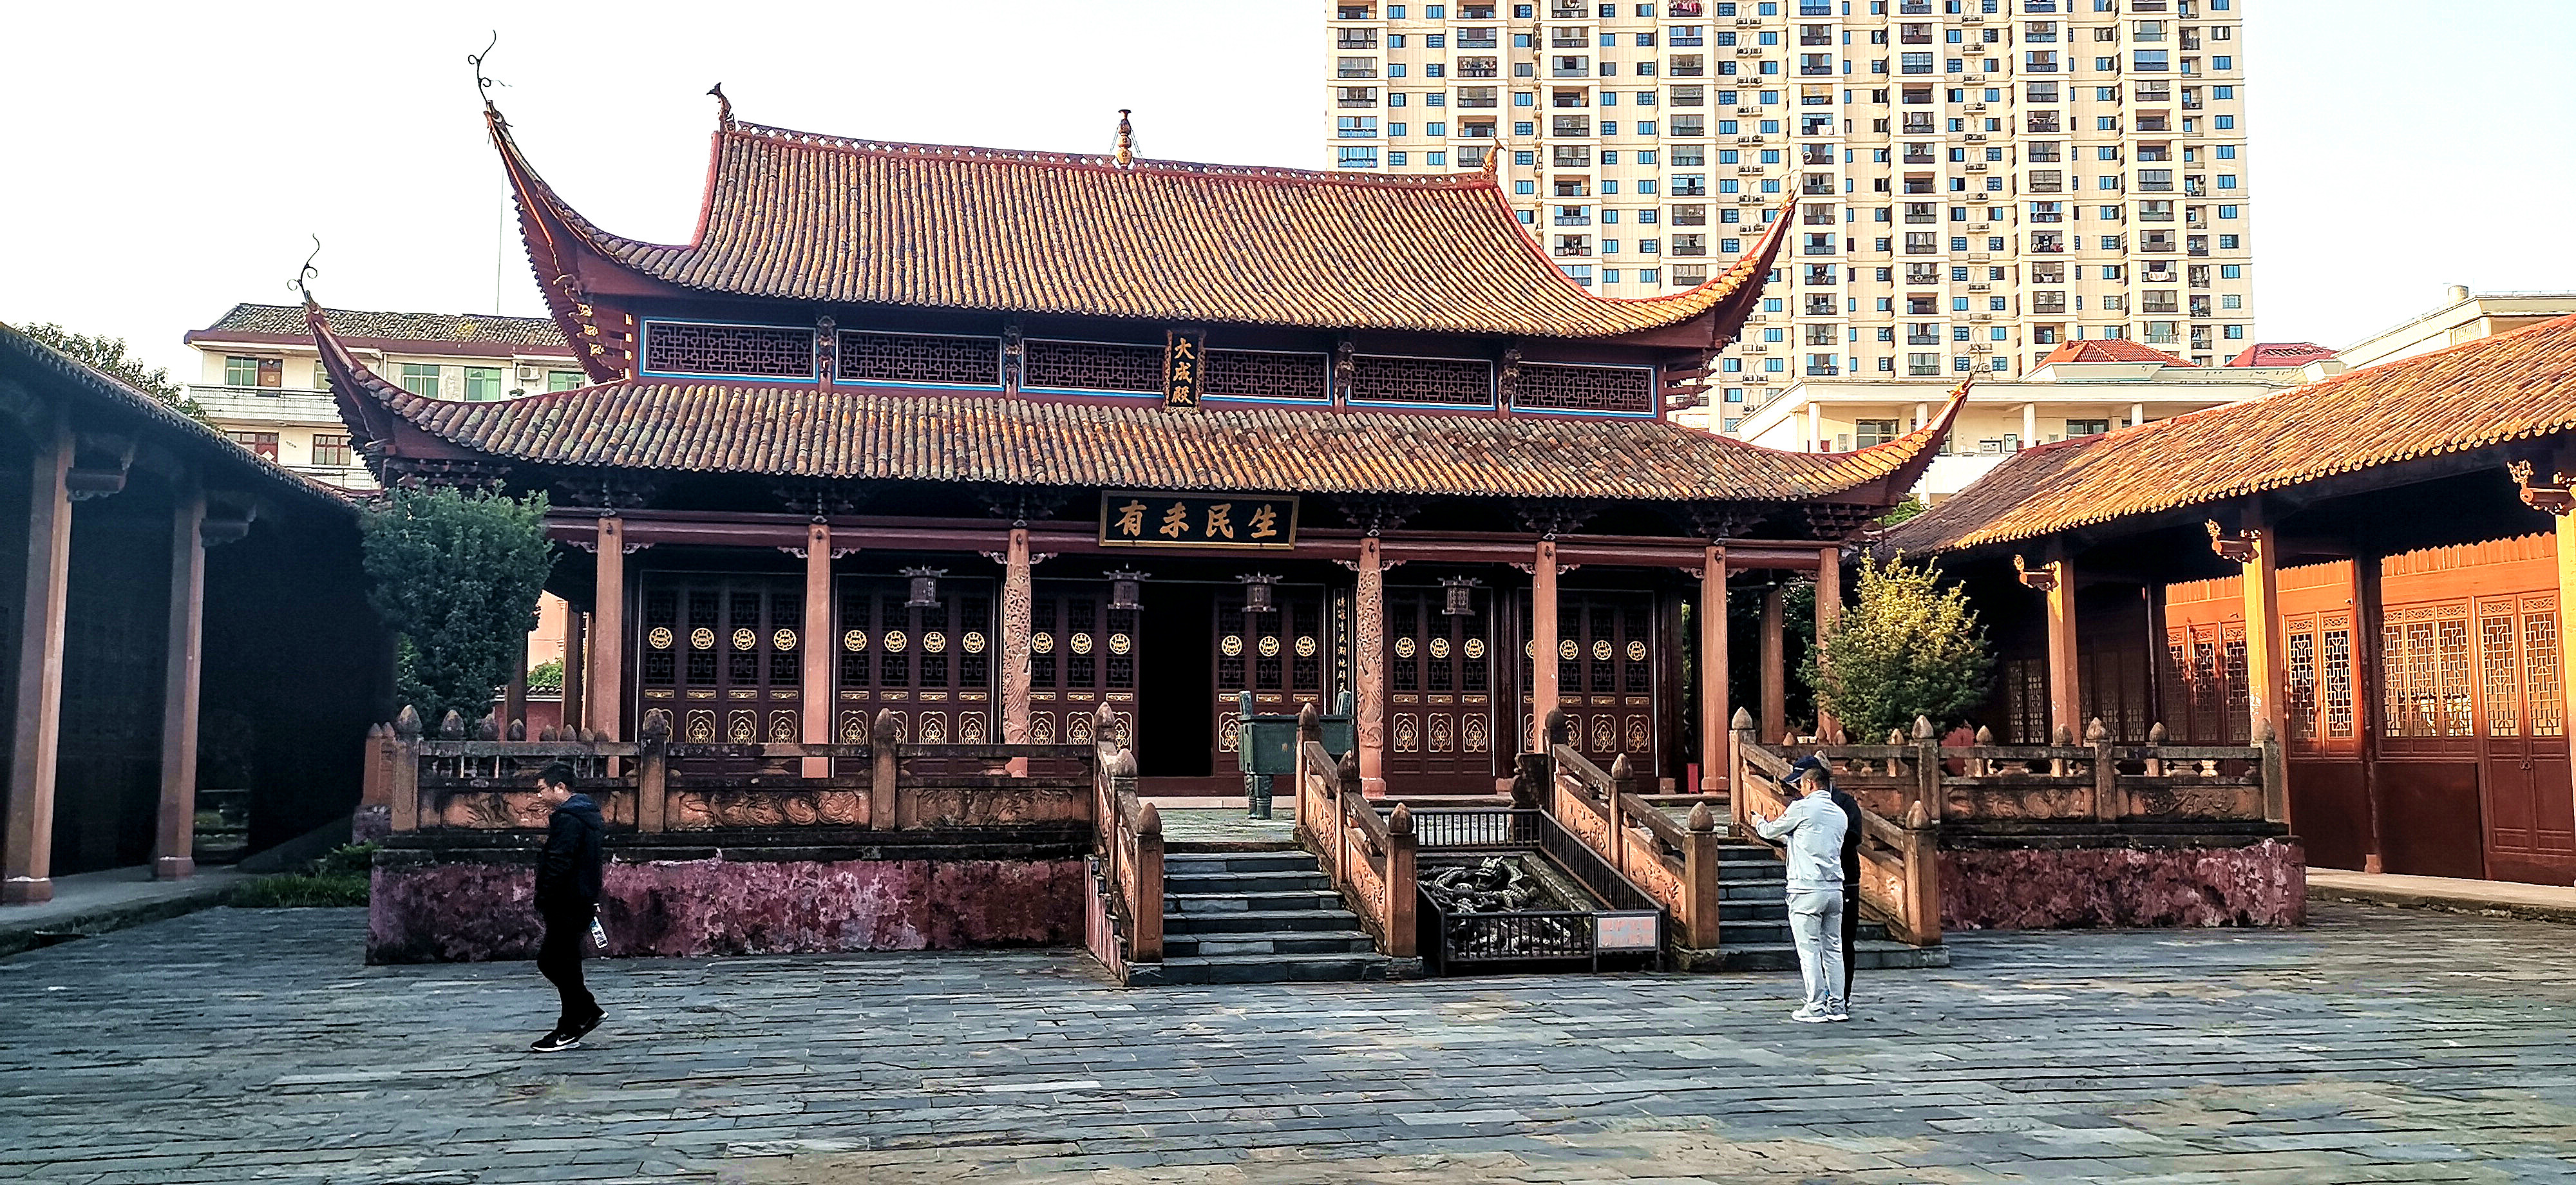 安福孔庙,位于江西省安福县,至今已有近900年的历史,是江西省惟一保存